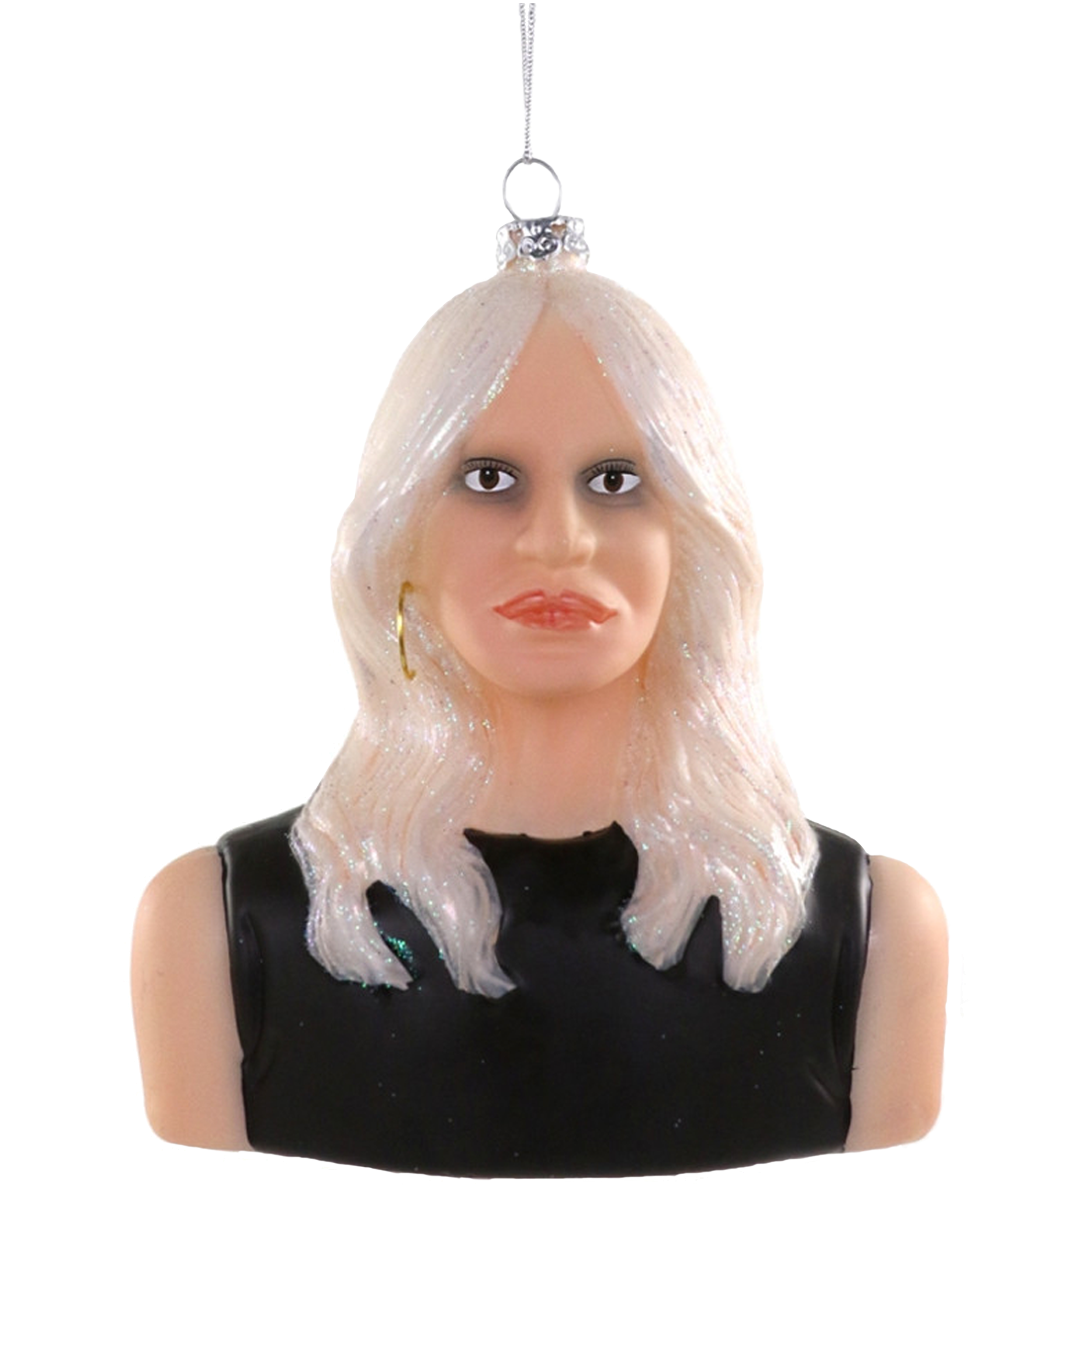 Donatella Versace Ornament